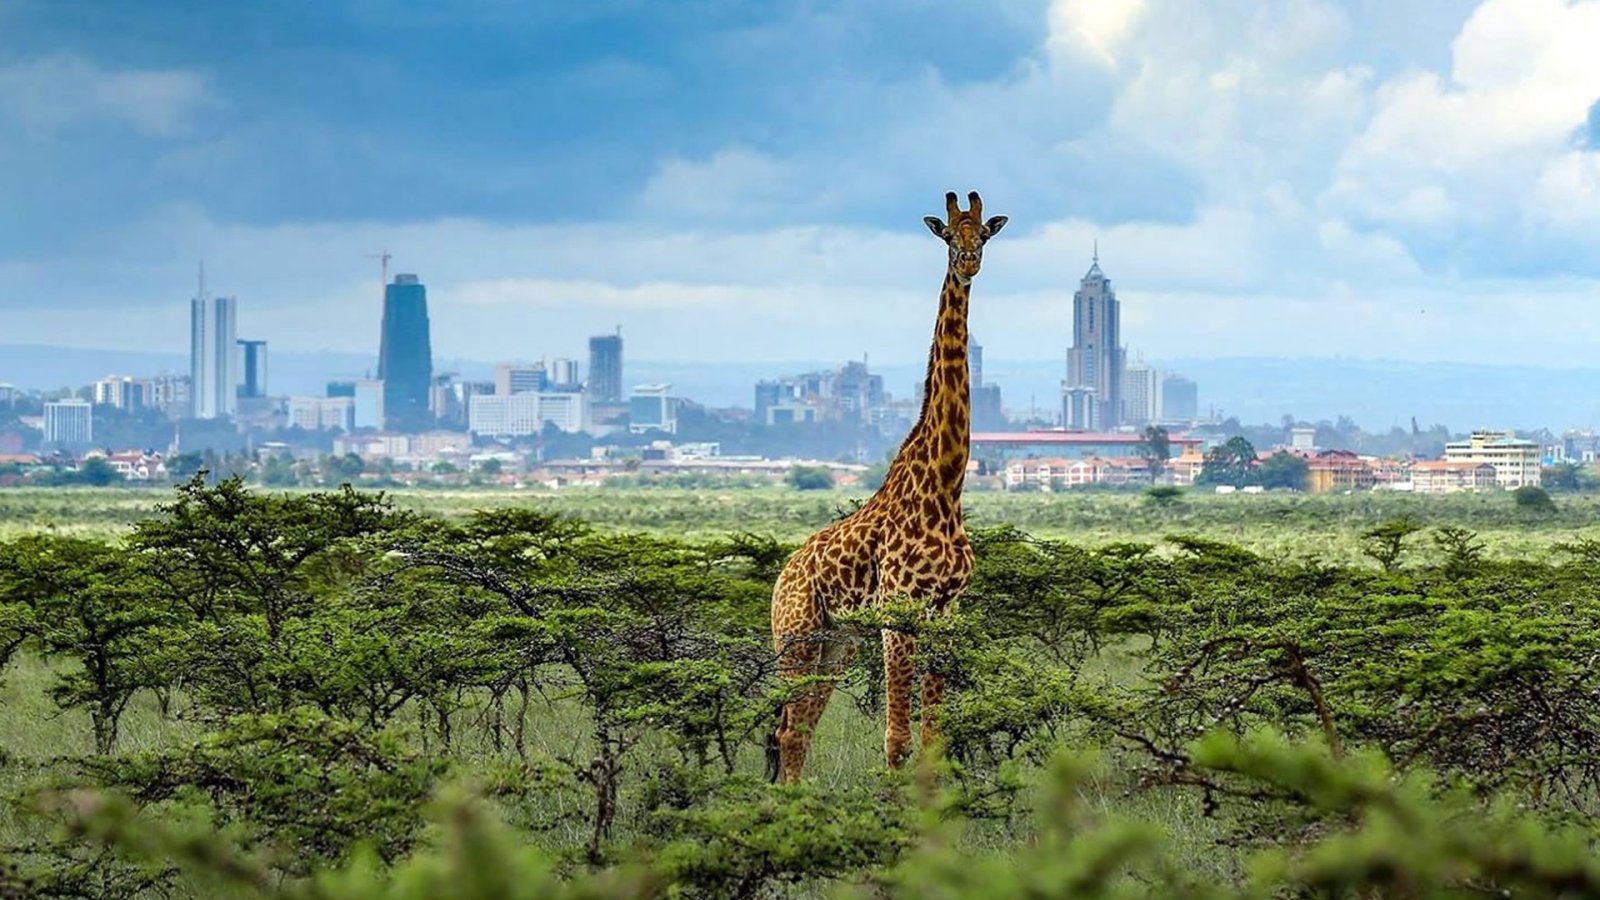 Kenya Safari in Nairobi National Park